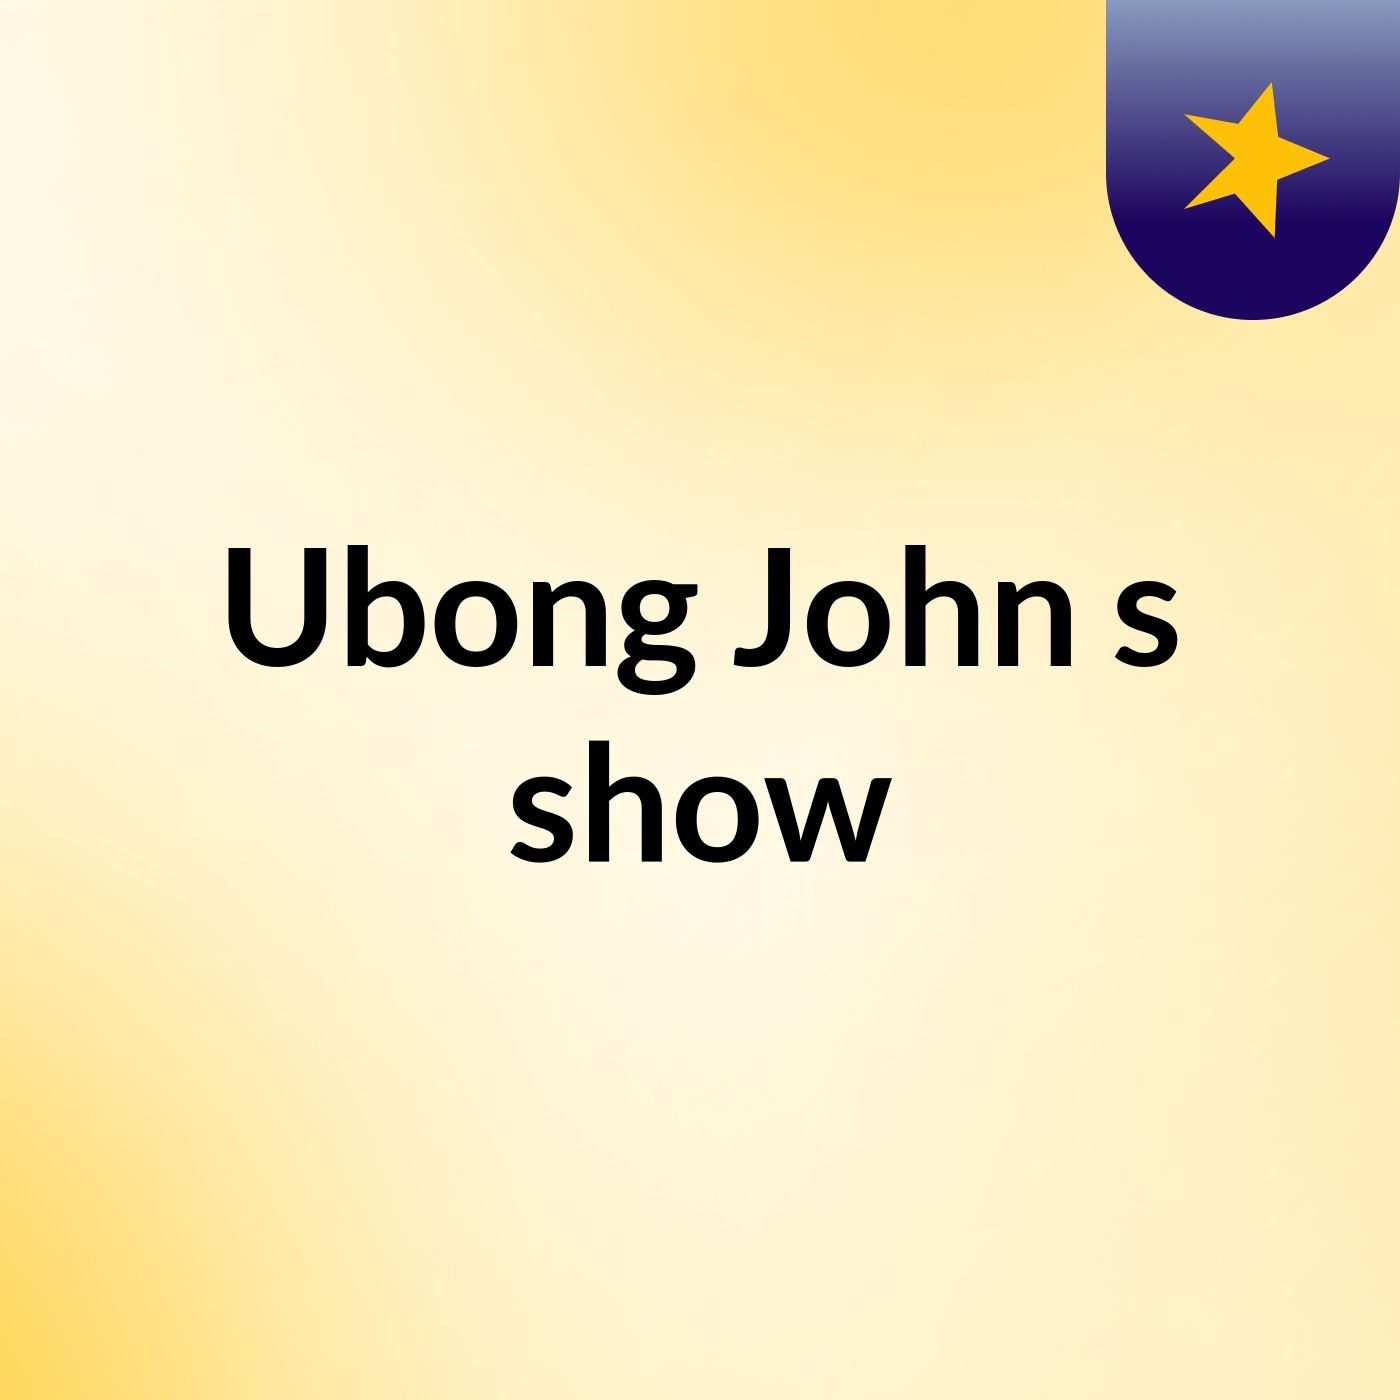 Ubong John's show